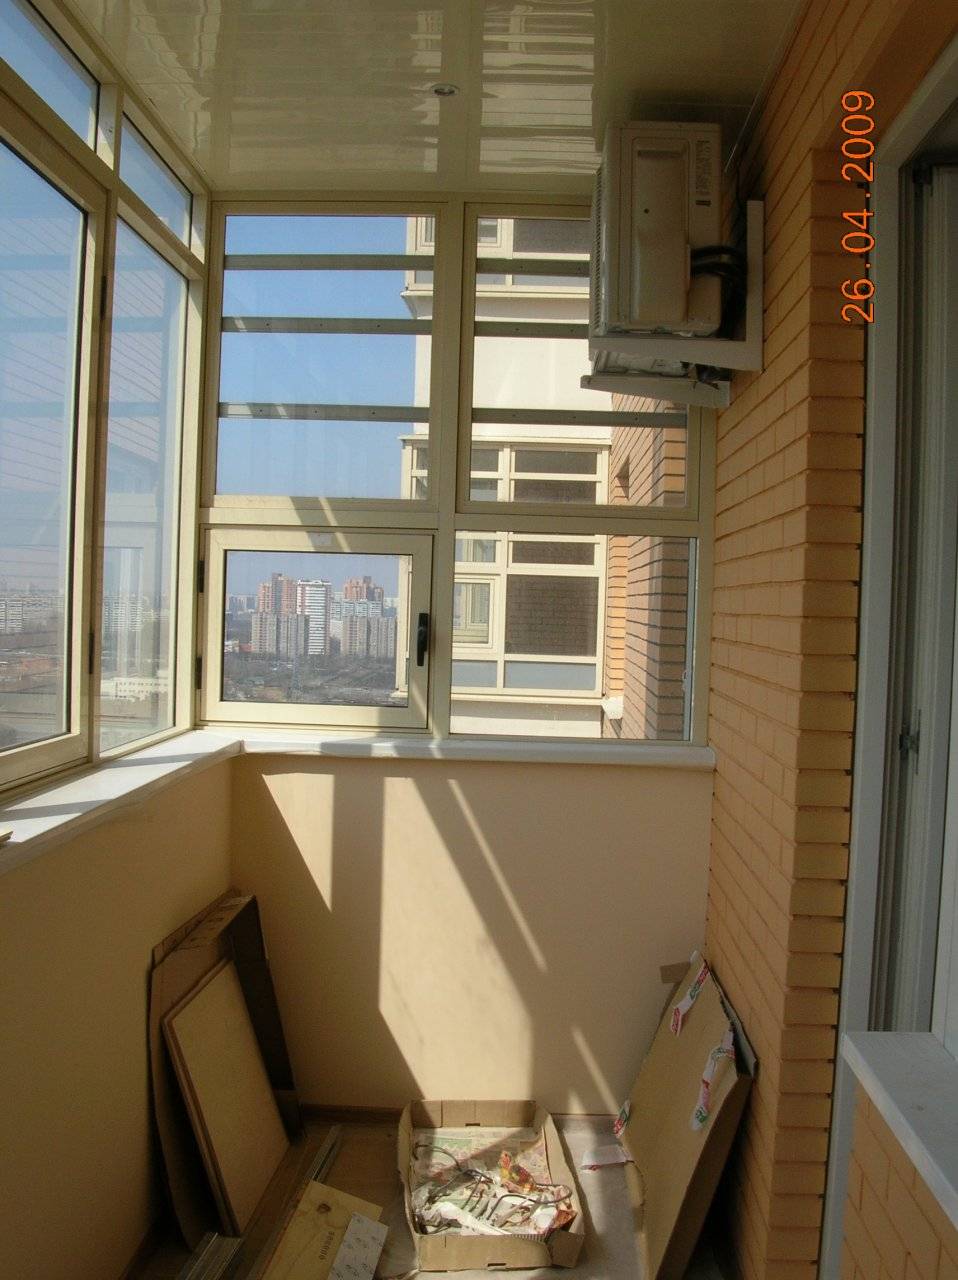 Как установить кондиционер на балконе и стоит ли? подробно